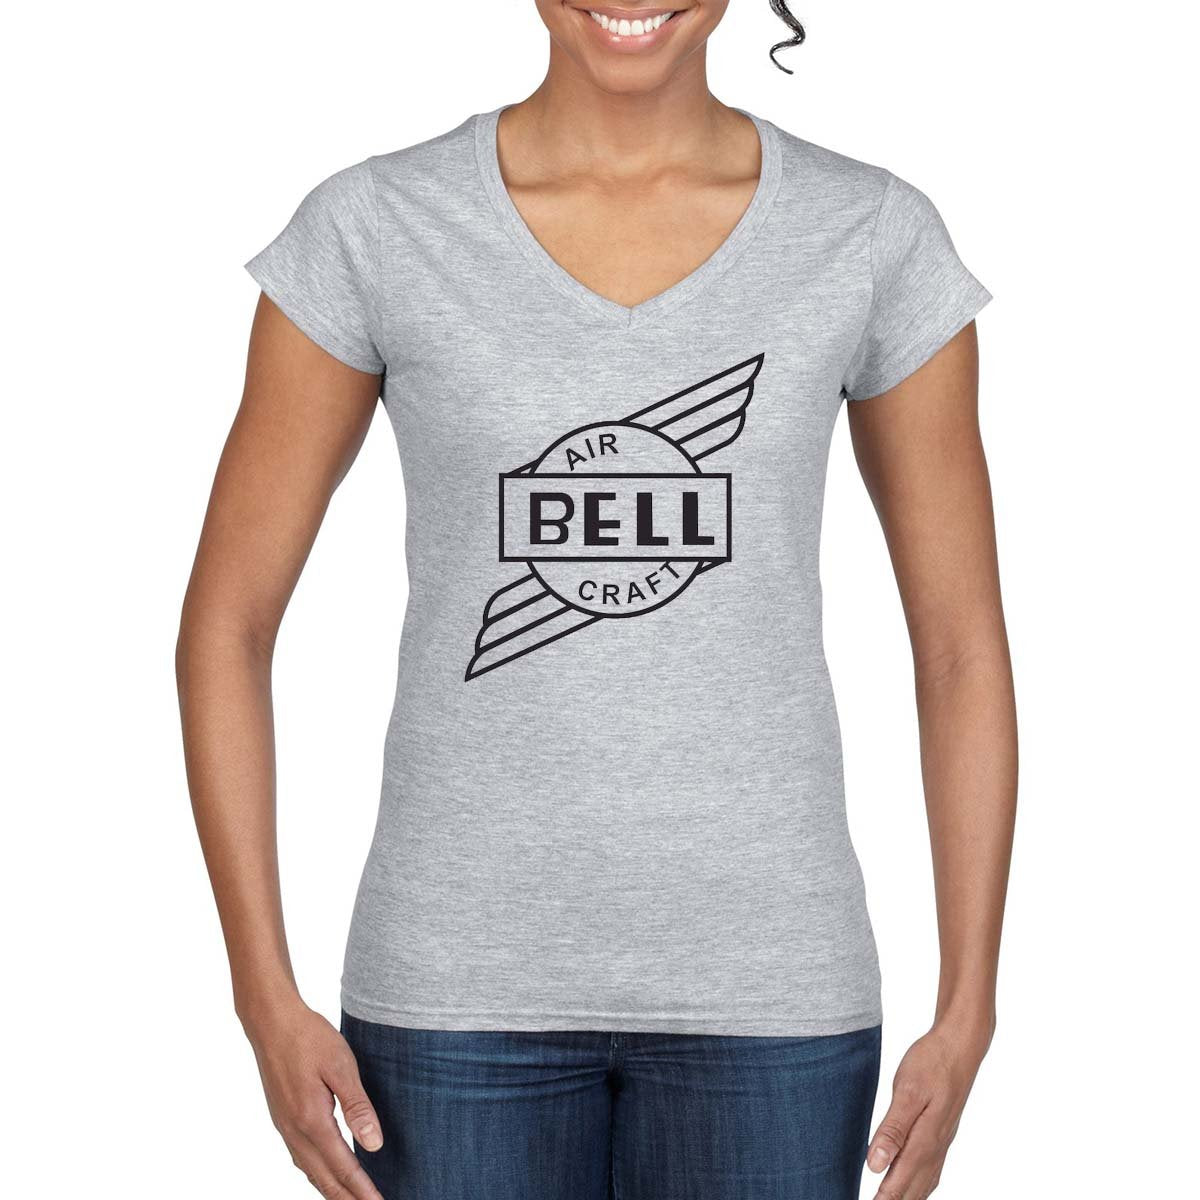 BELL AIRCRAFT Vintage Logo Design on Women's T-Shirt